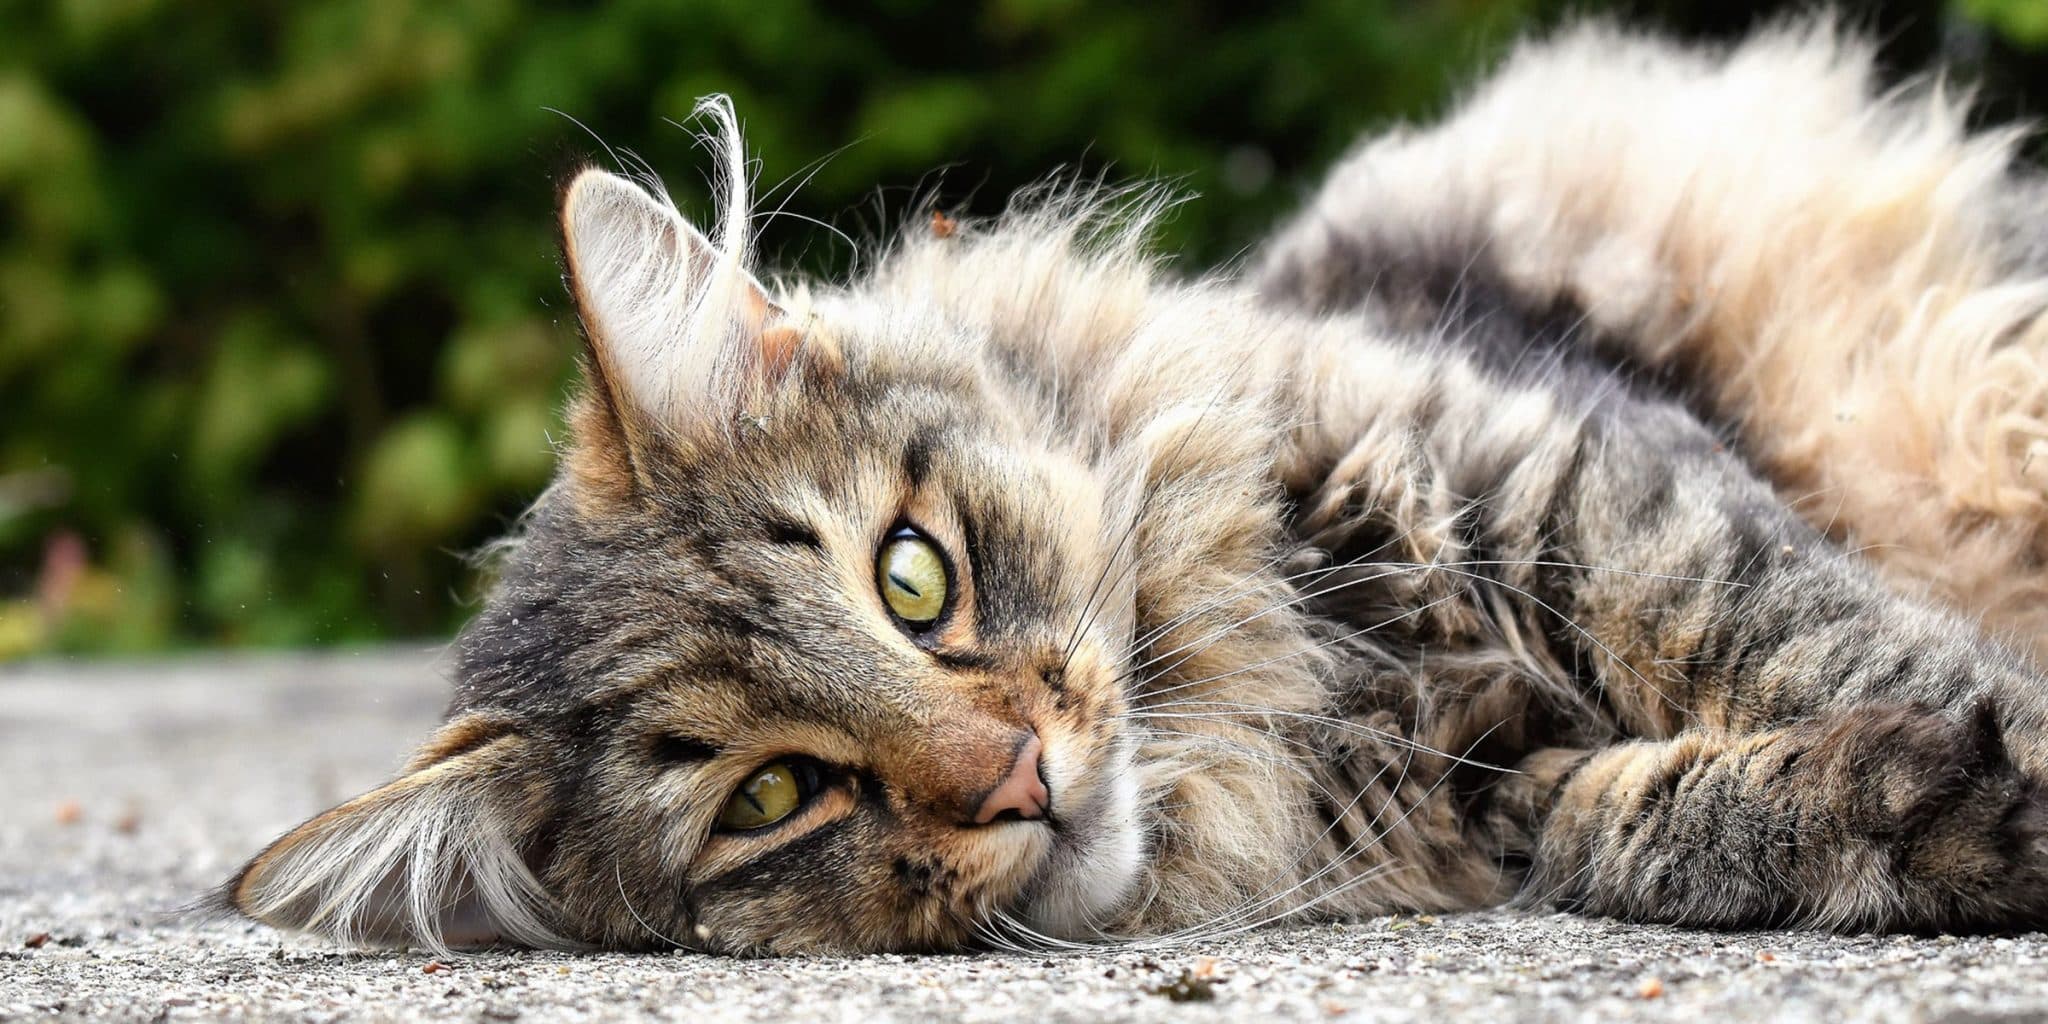 Comment la science permet-elle de reconnaître les émotions chez les chats ?